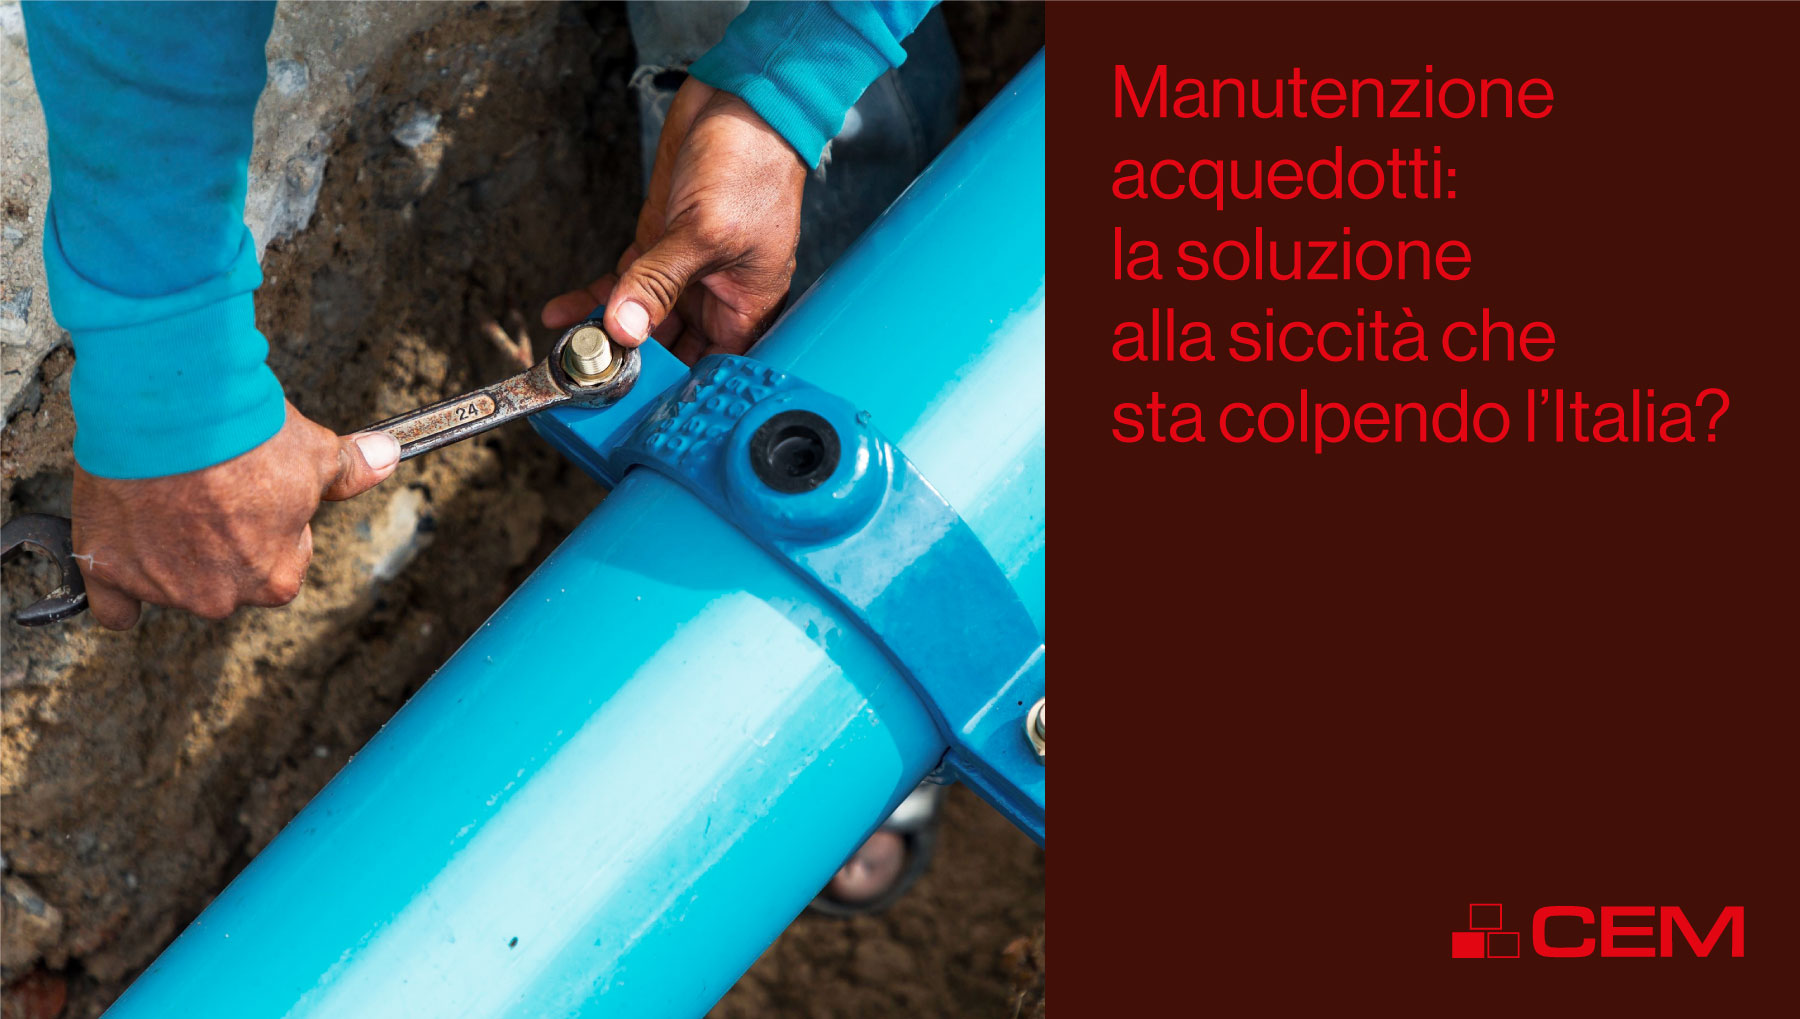 Manutenzione acquedotti: la soluzione alla siccità che sta colpendo l’Italia?